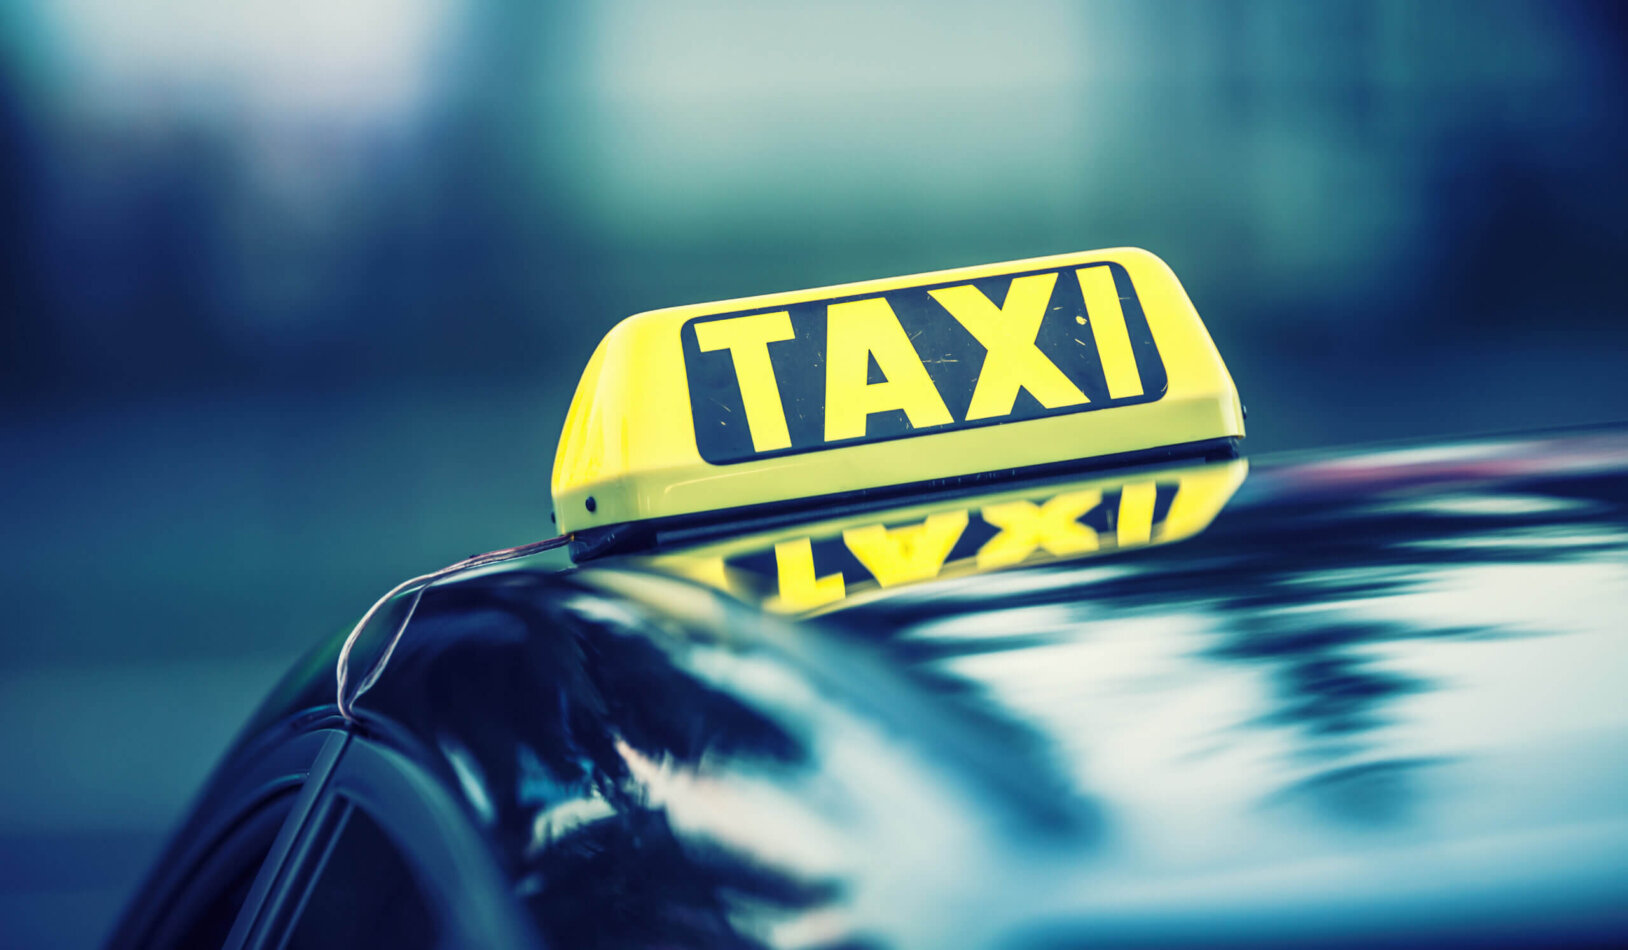 Шашечки такси на прозрачном фоне